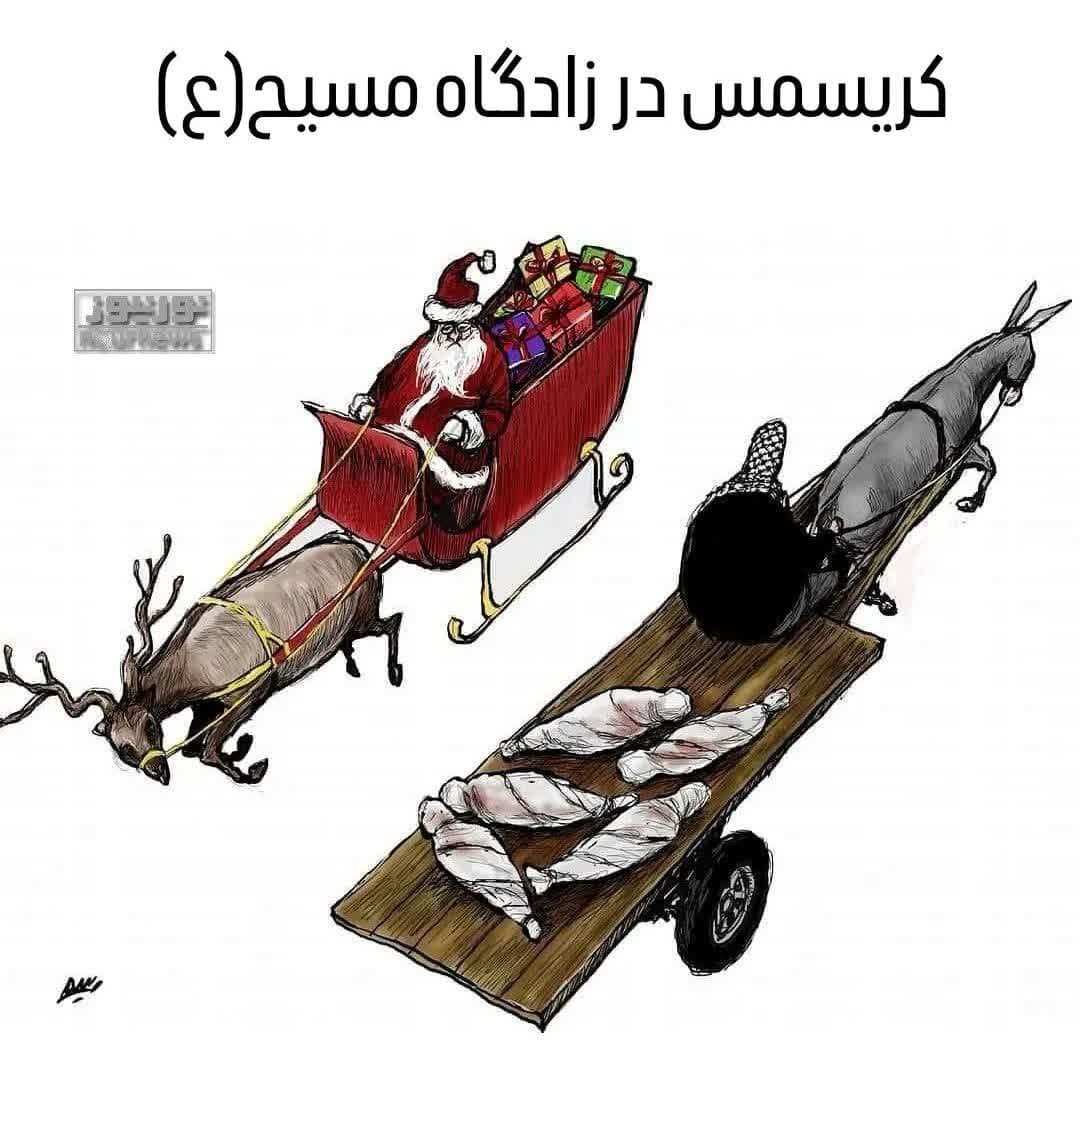 هدیه بابانوئل به کودکان فلسطینی